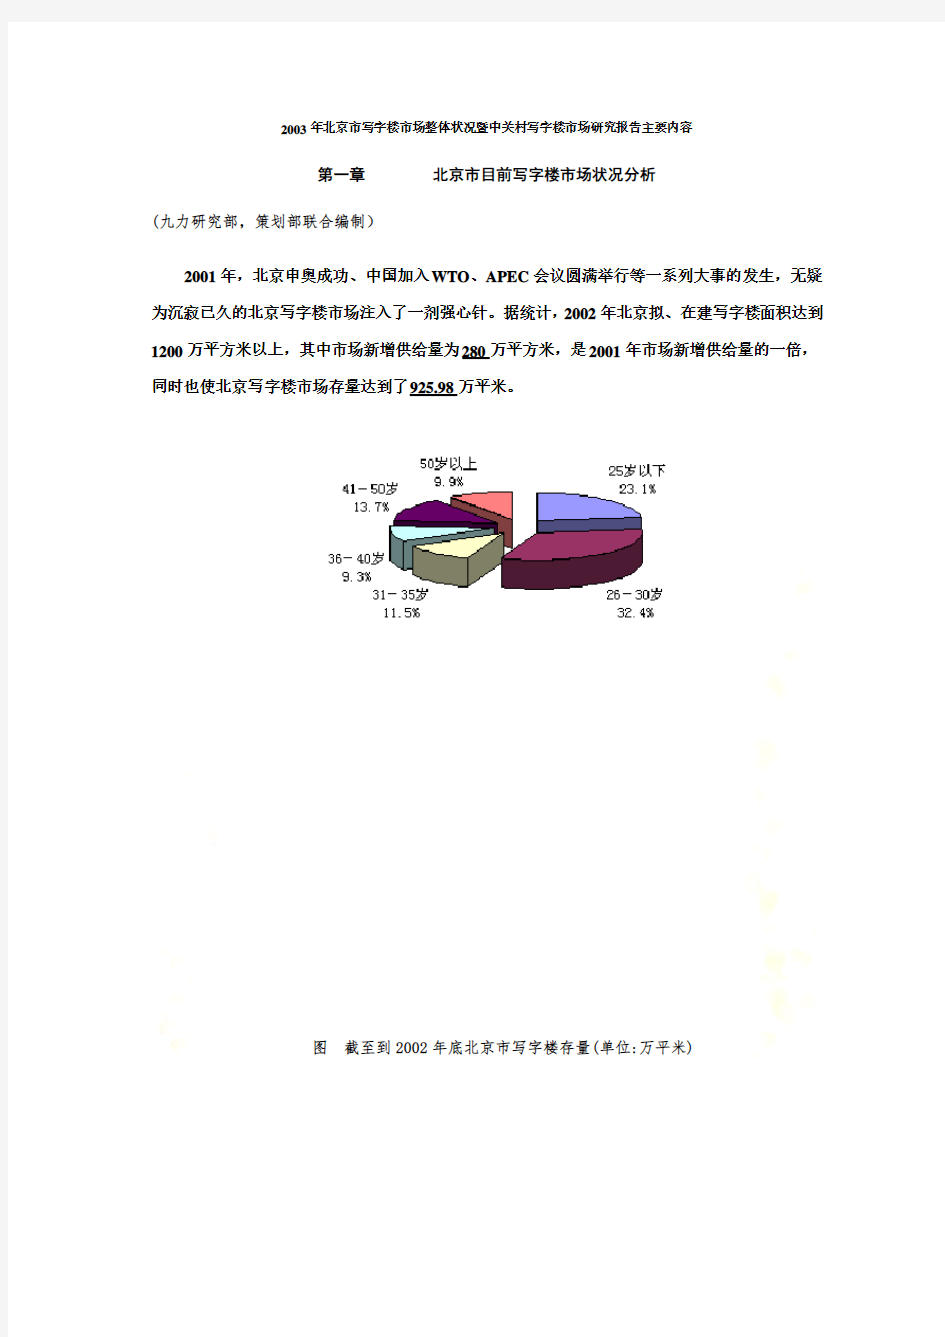 北京市写字楼市场整体状况(doc 15页)